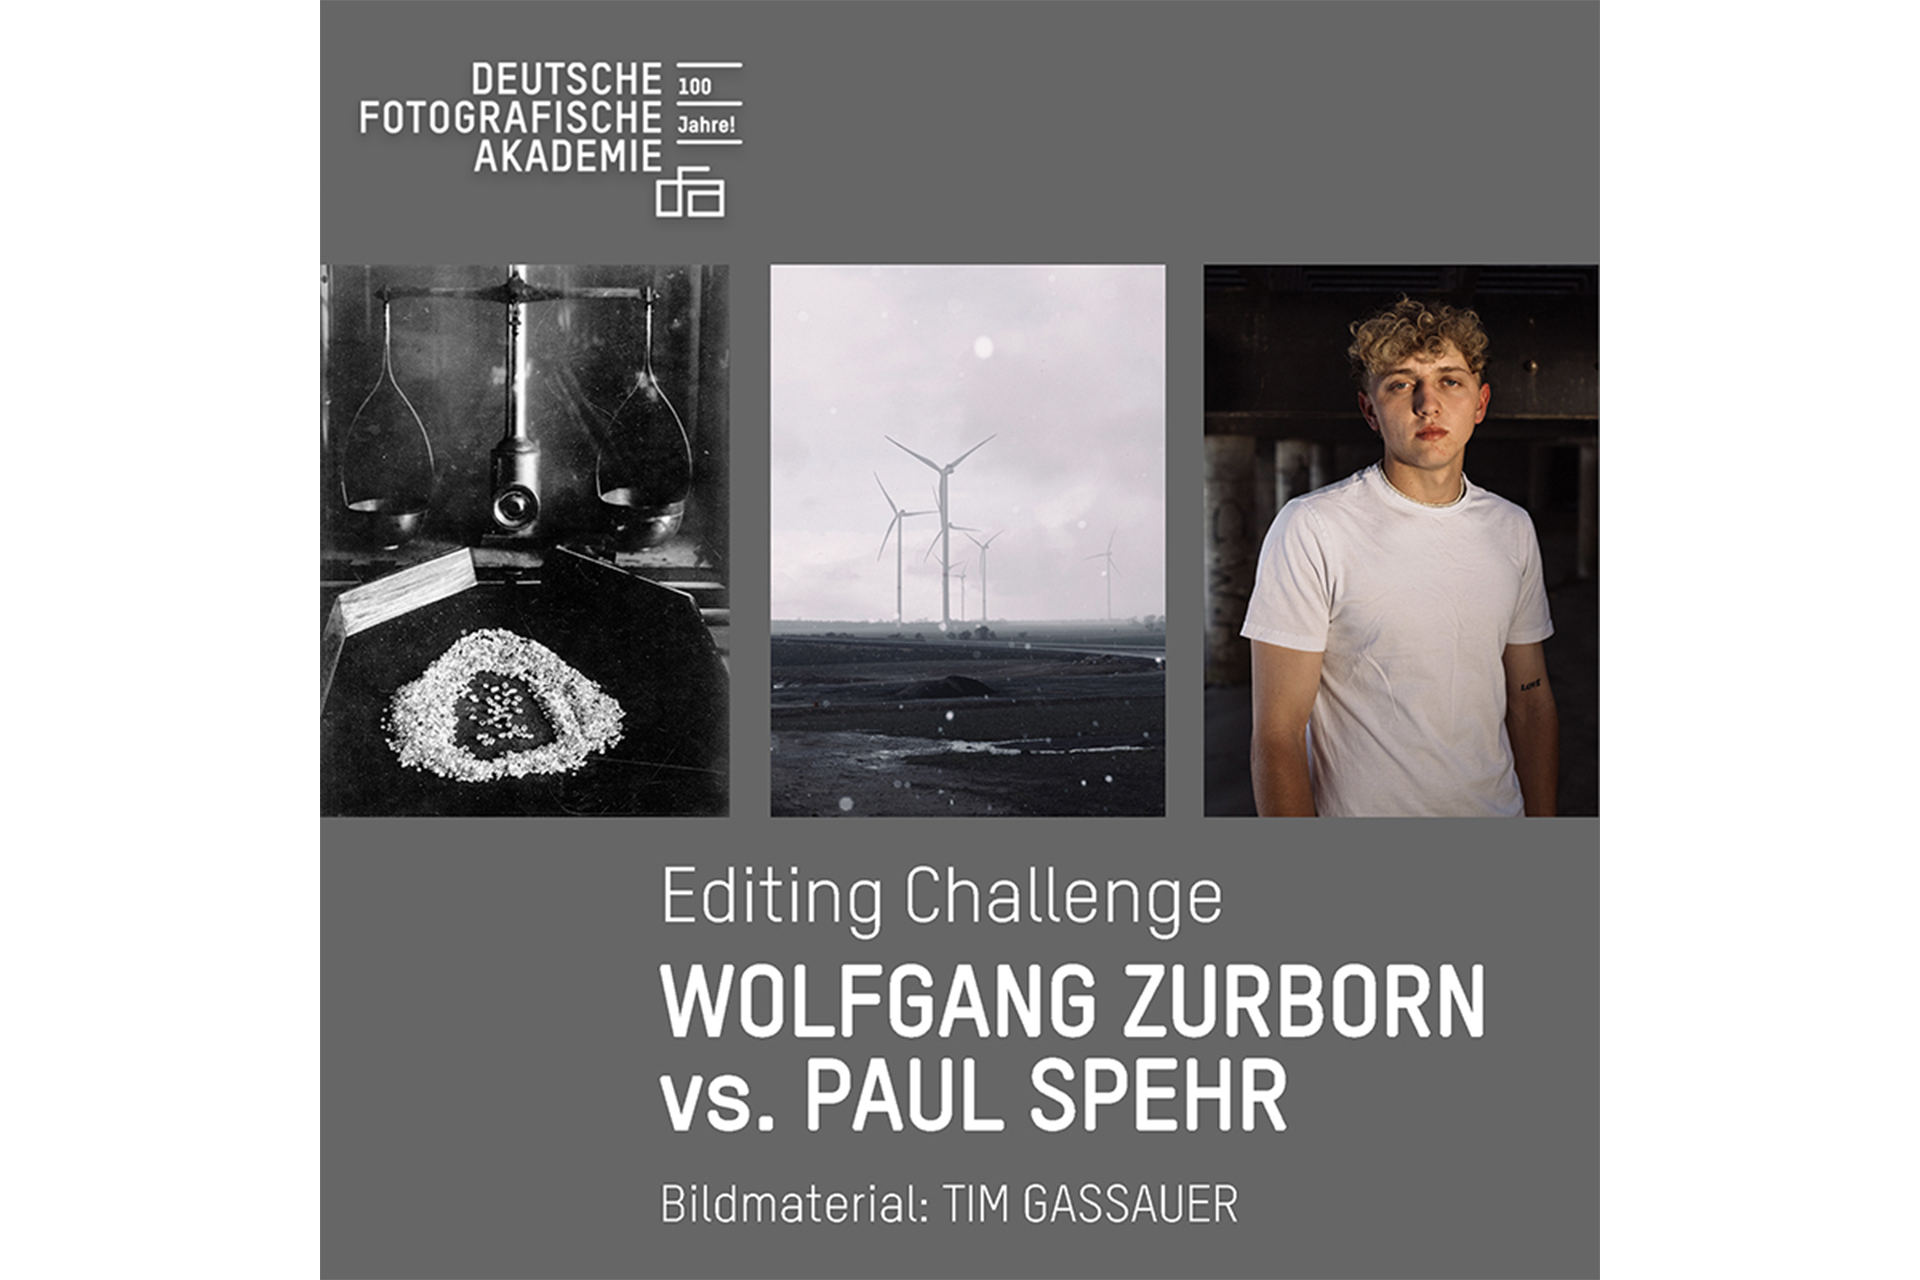 Zurborn vs. Spehr